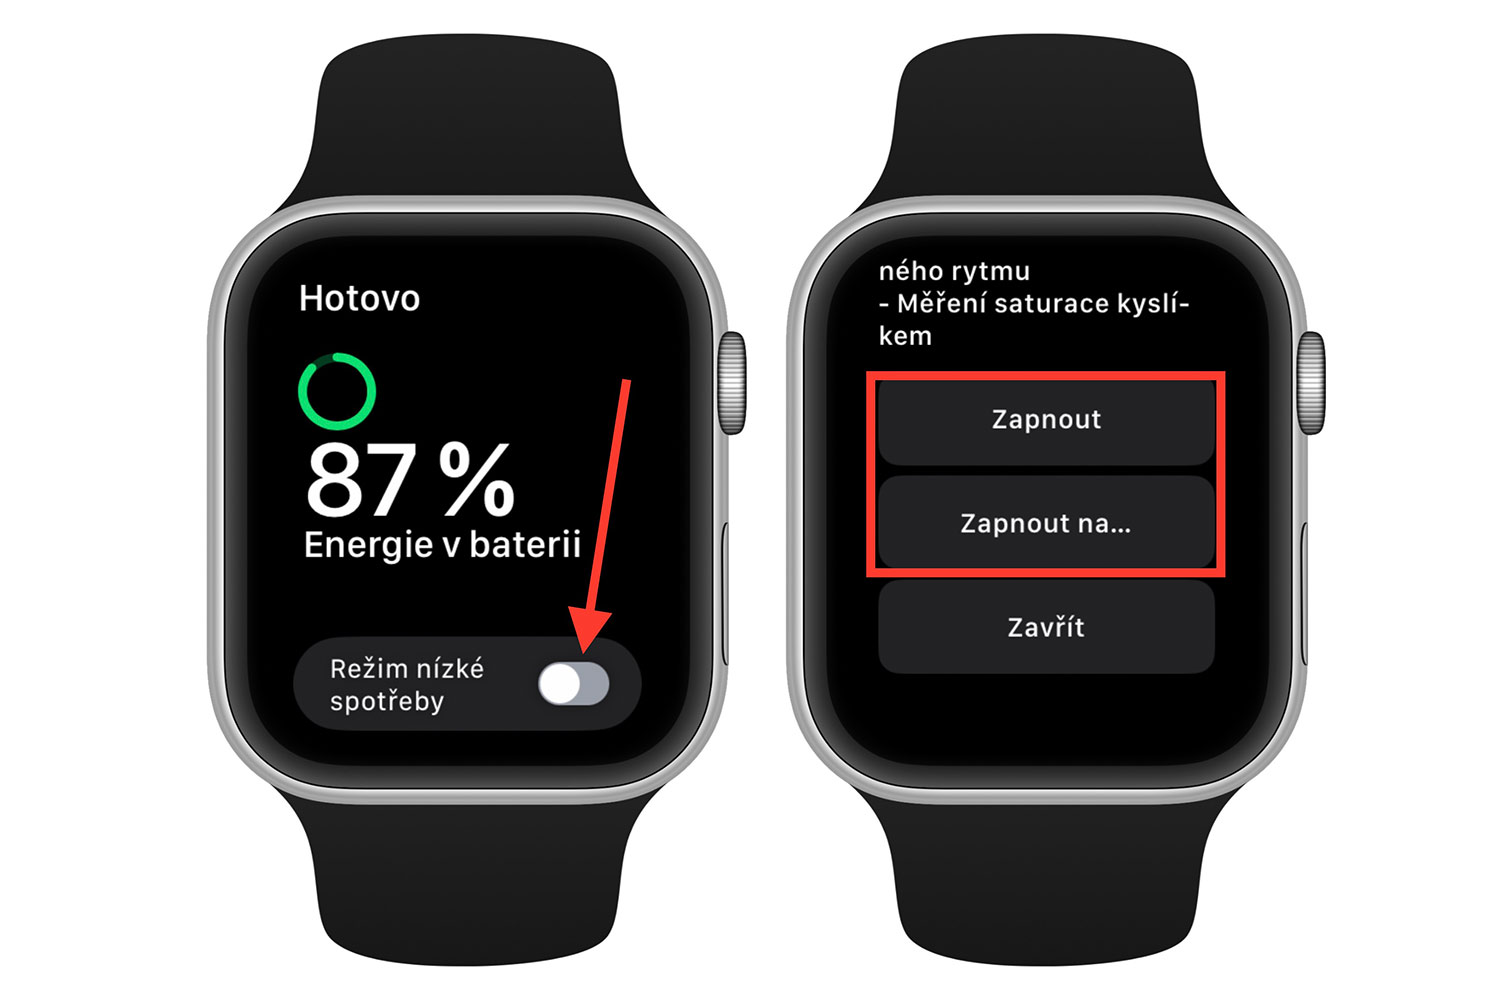 Apple Watch režim nízké spotřeby